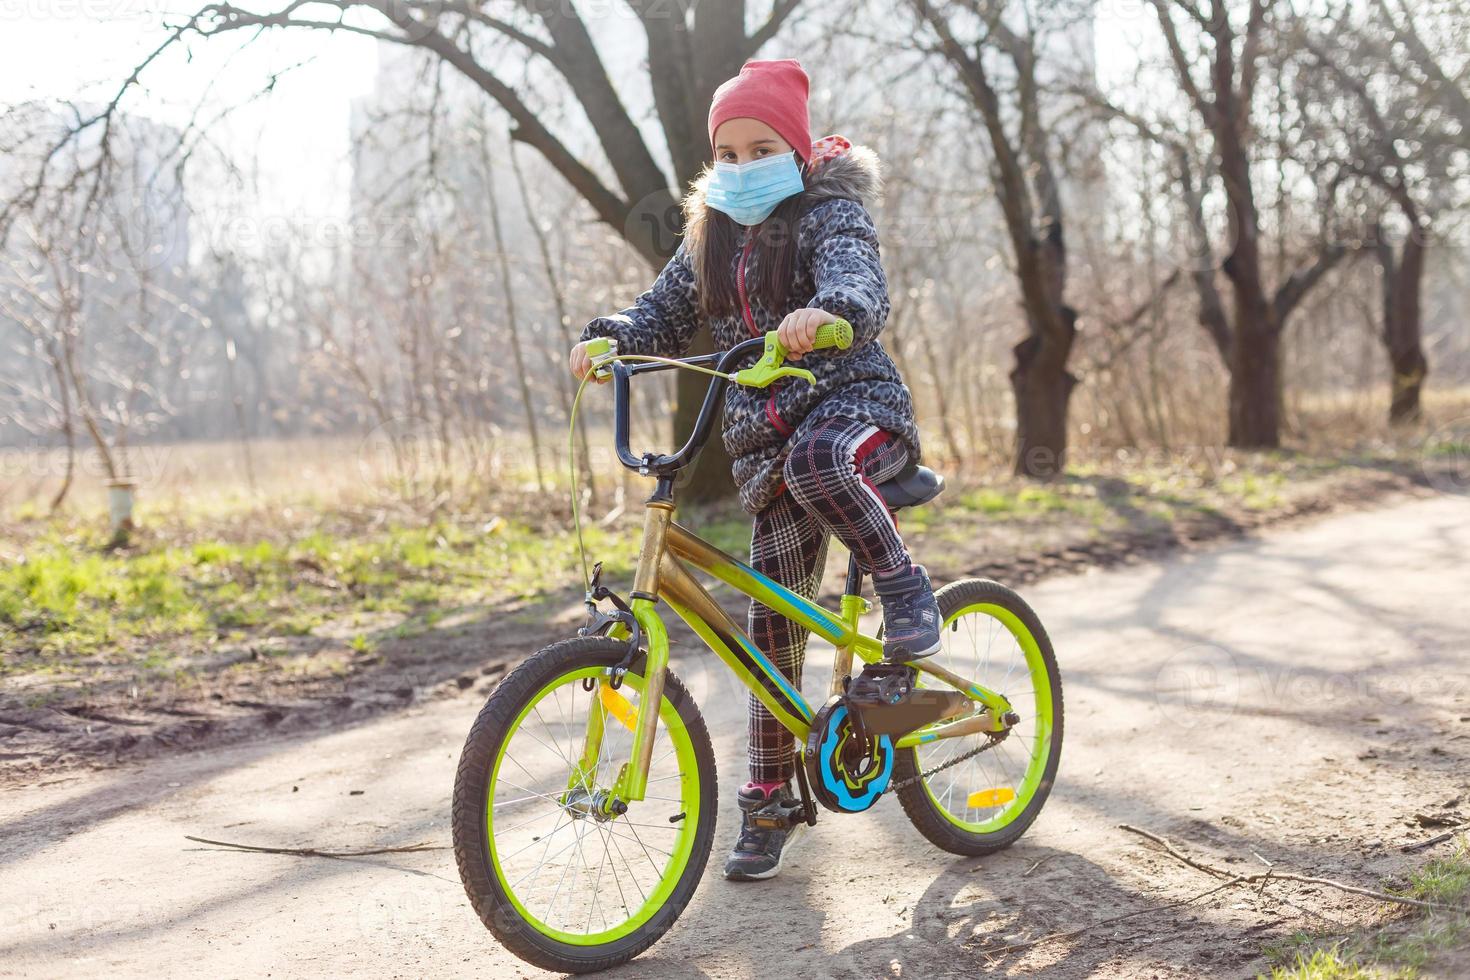 7 7 años antiguo contento pequeño niña niño paseo bicicleta en el parque a hogar y vistiendo proteccion máscara para proteger pm2.5 y coronavirus covid-19 pandemia virus sintomas.deporte ejercicio para salud. foto